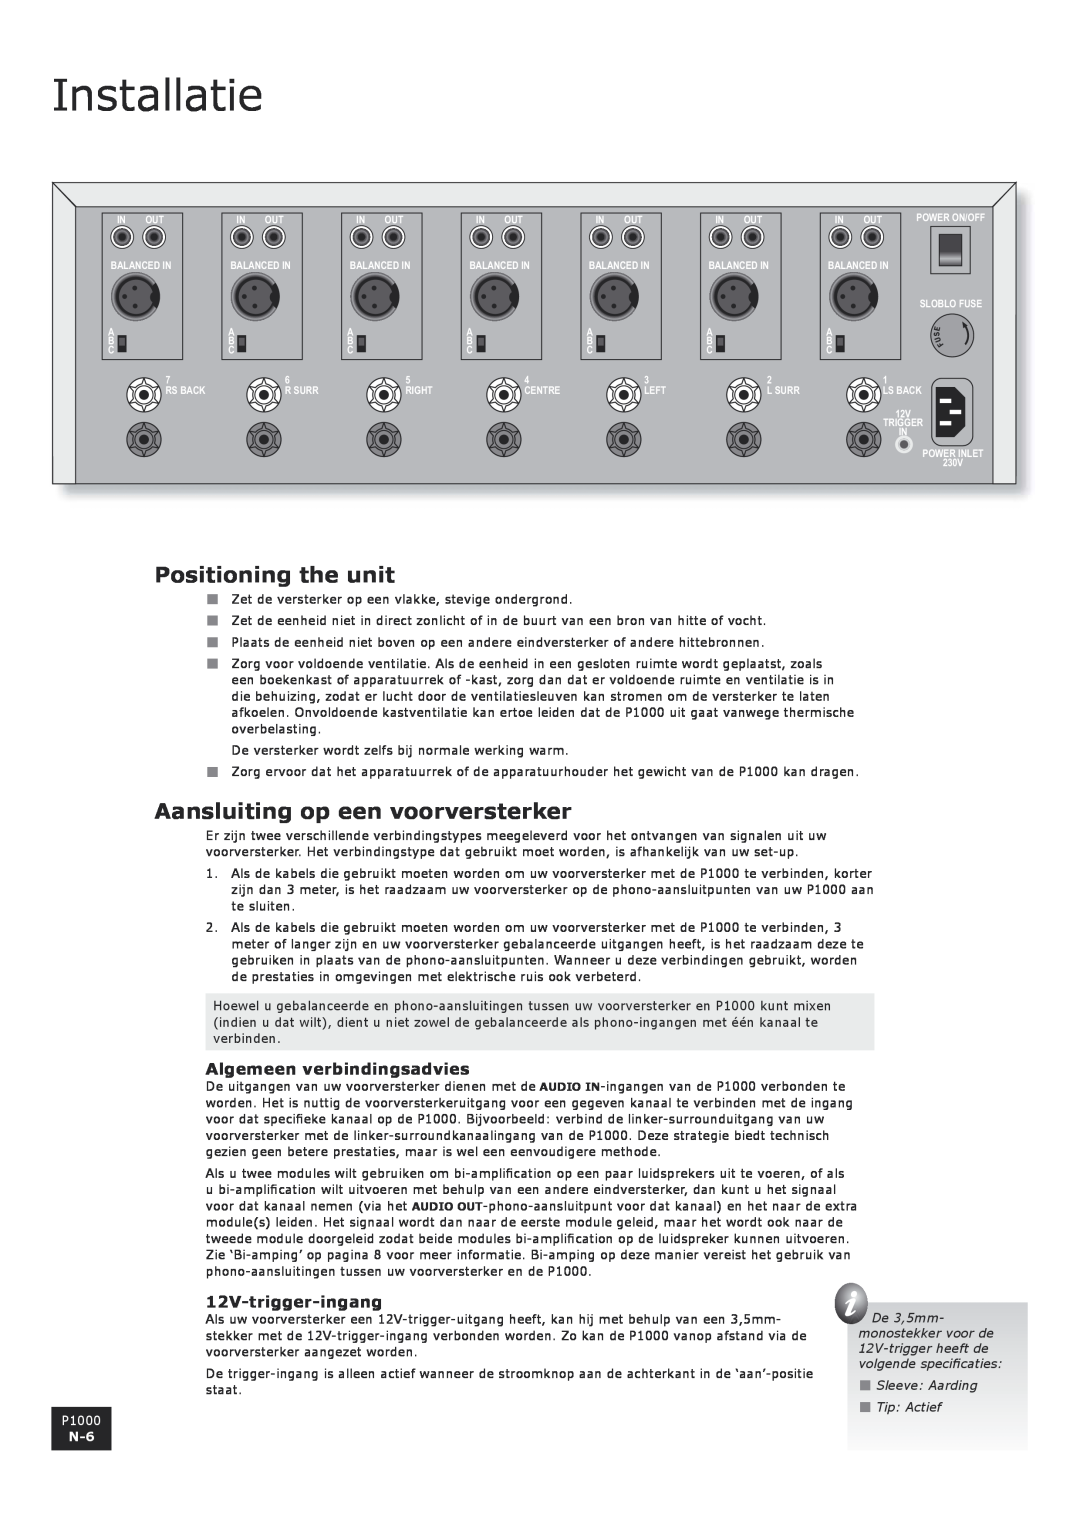 Arcam P1000 manual Installatie, Aansluiting op een voorversterker, Algemeen verbindingsadvies, 12V-trigger-ingang 